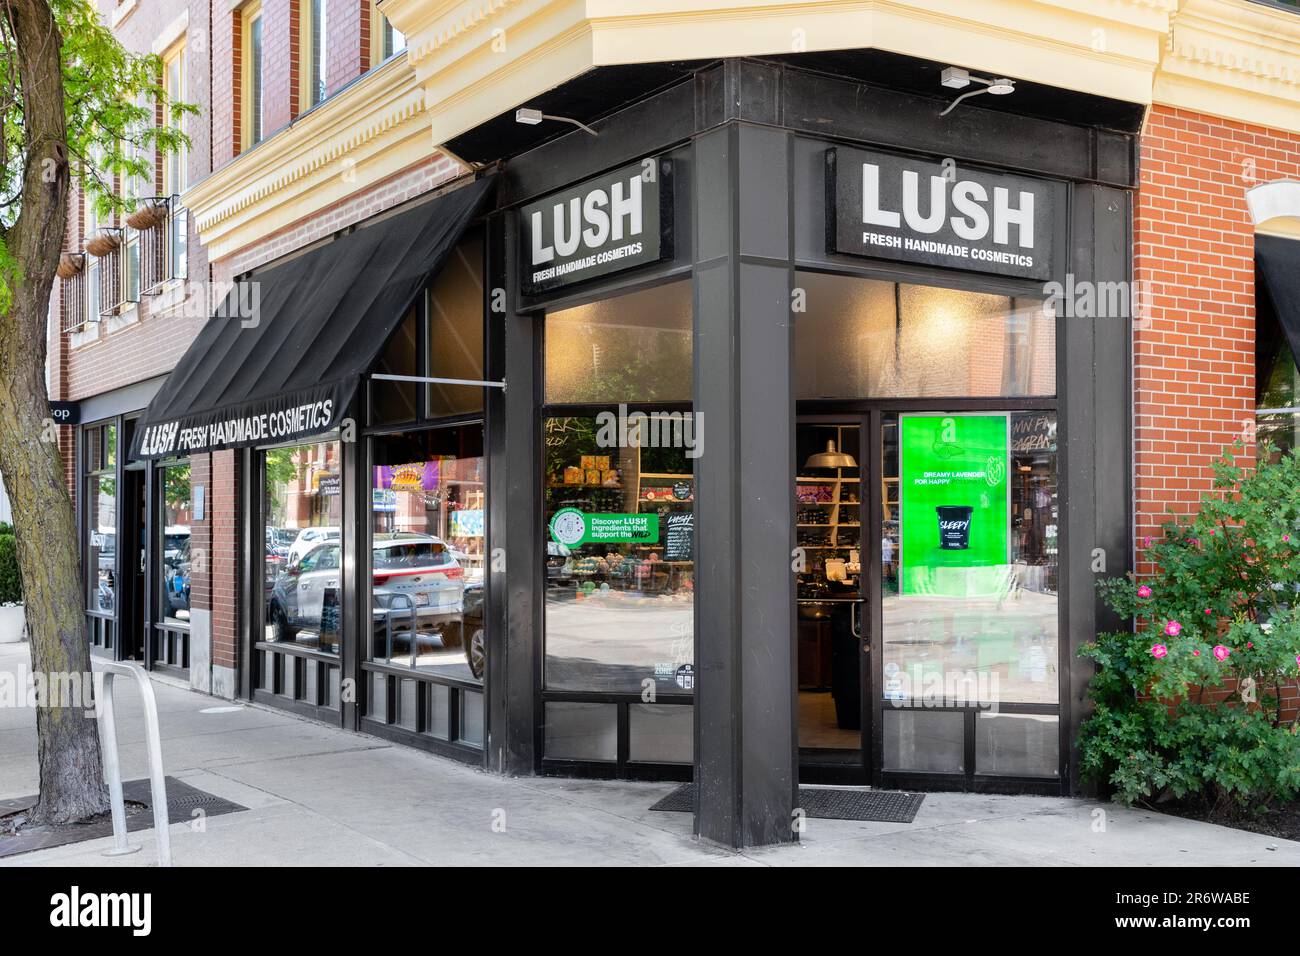 Lush Fresh Handmade Cosmetics ist ein britisches Kosmetikunternehmen, das Hygieneprodukte mit fast 1000 Geschäften weltweit verkauft. Stockfoto